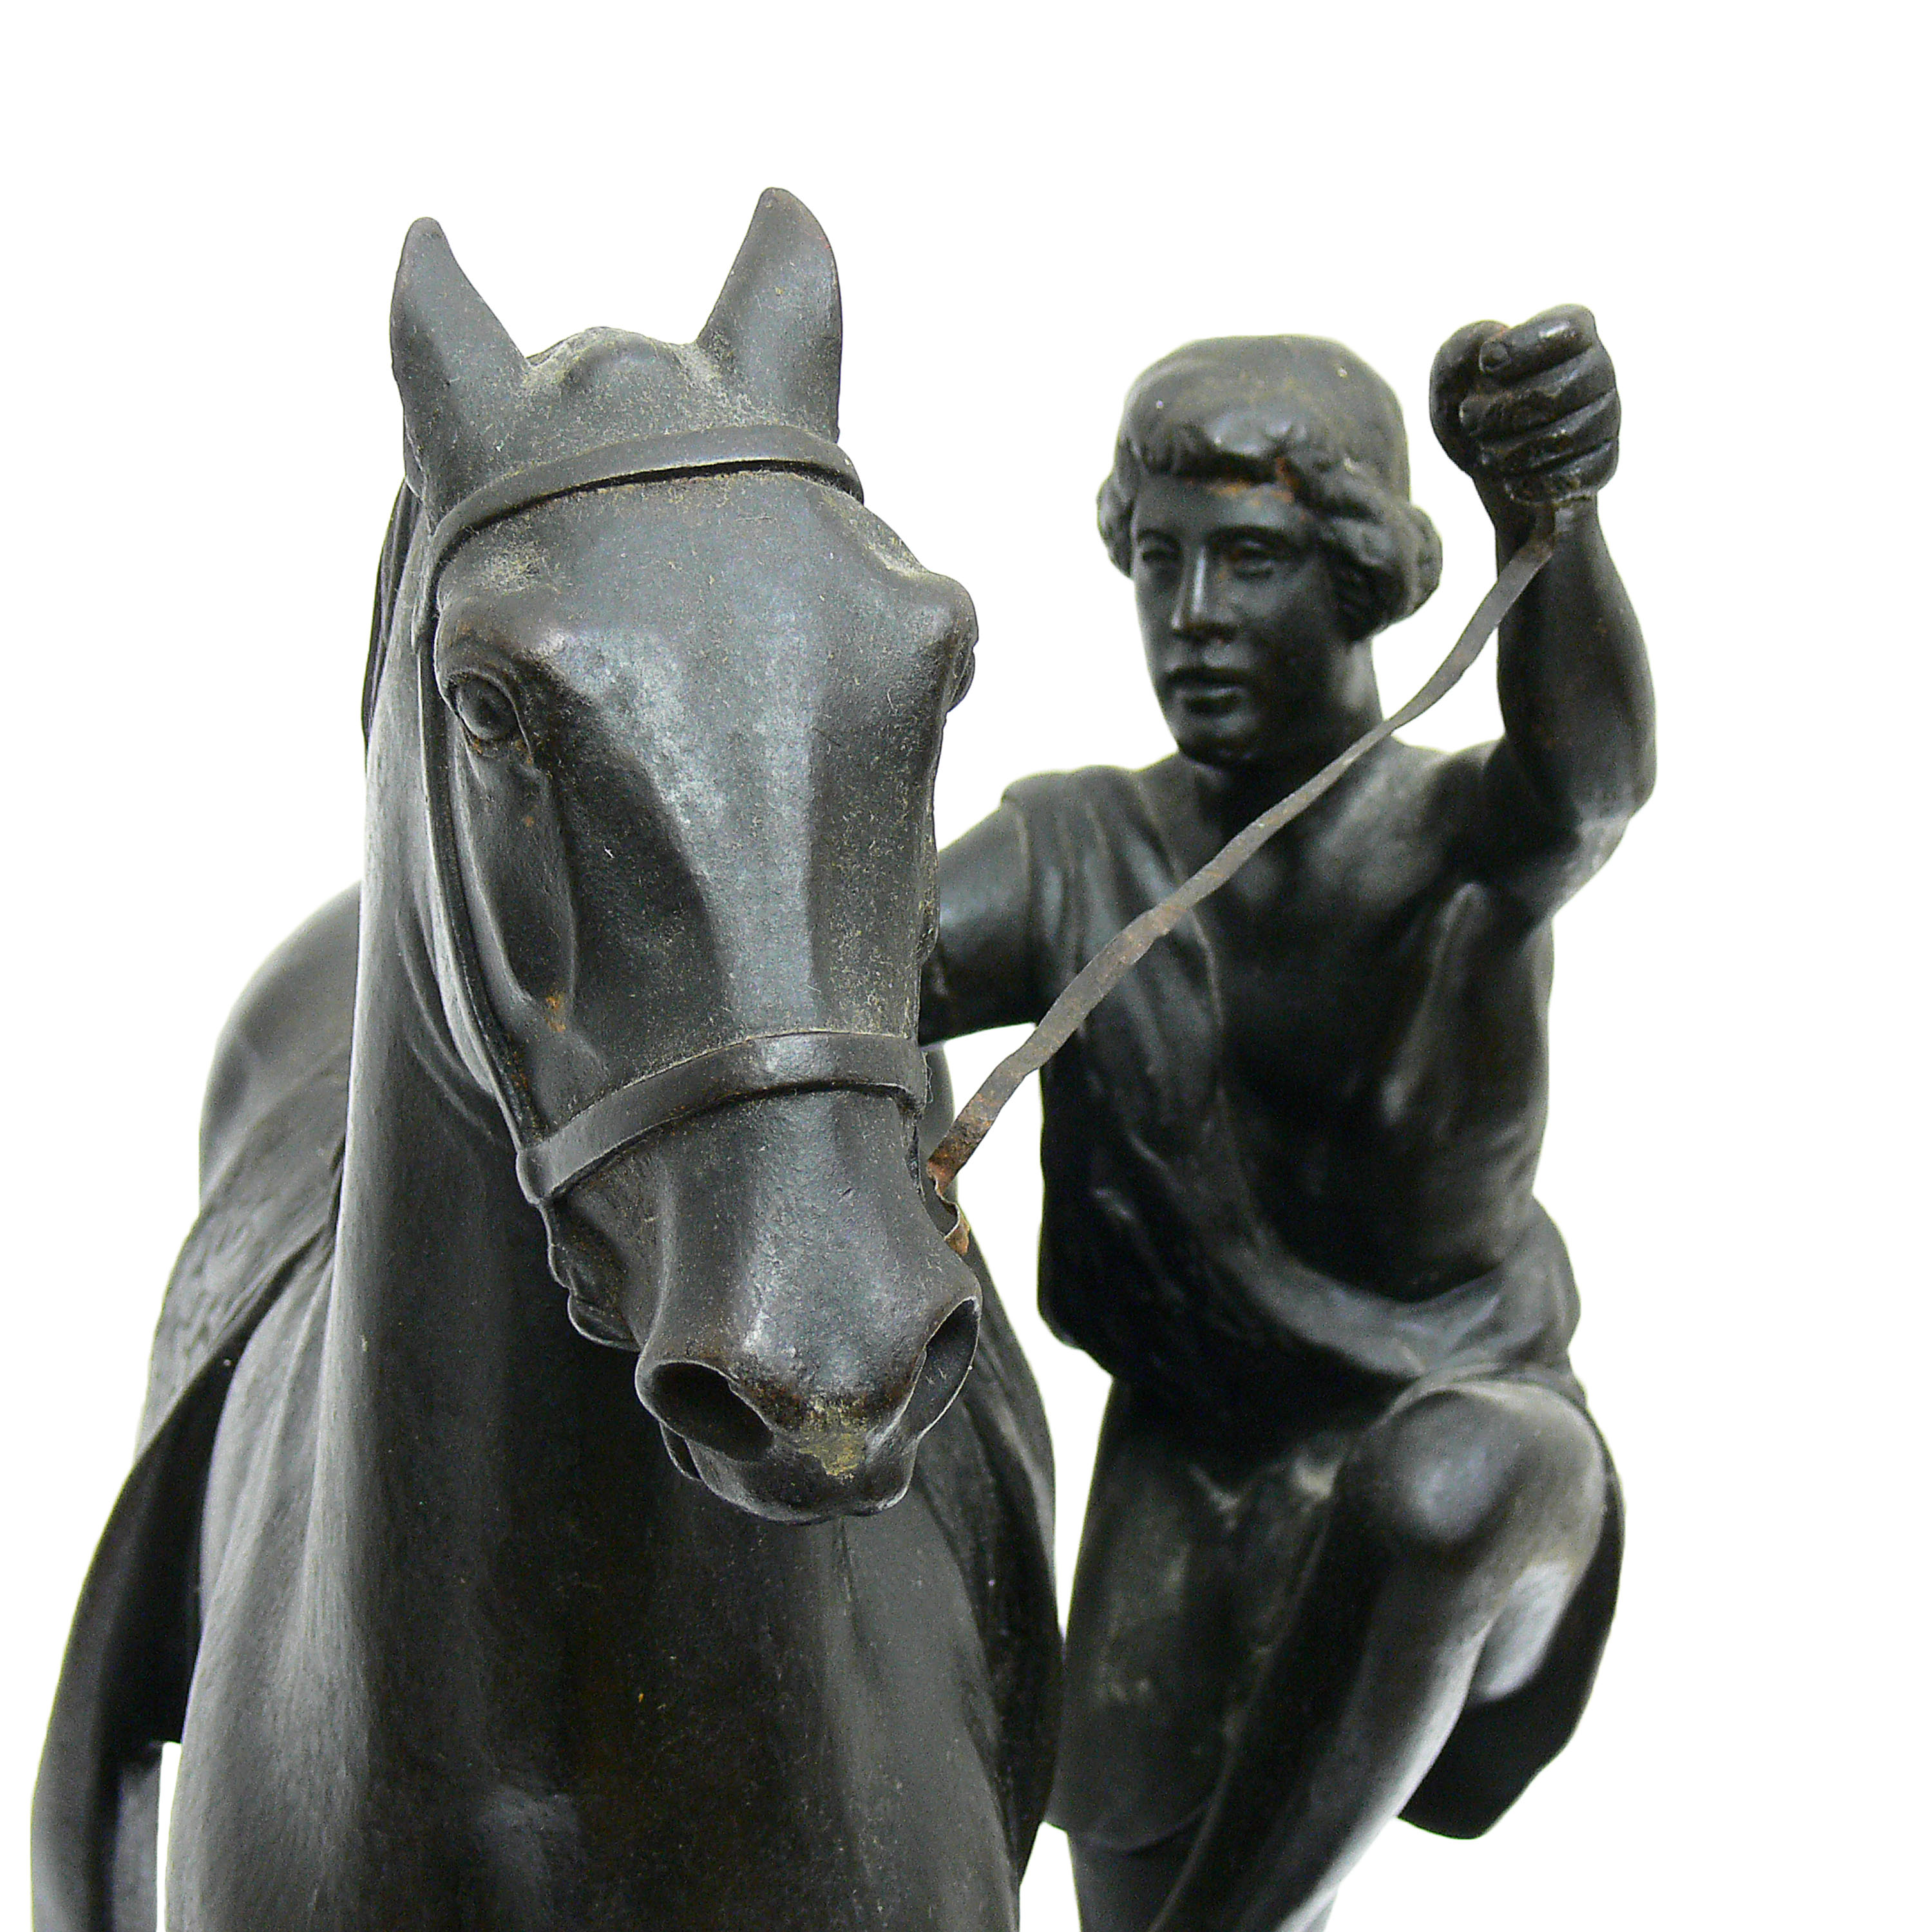 Peter Klodt von Jürgensburg | Grecki jeździec dosiadający konia, przed 1917 r.